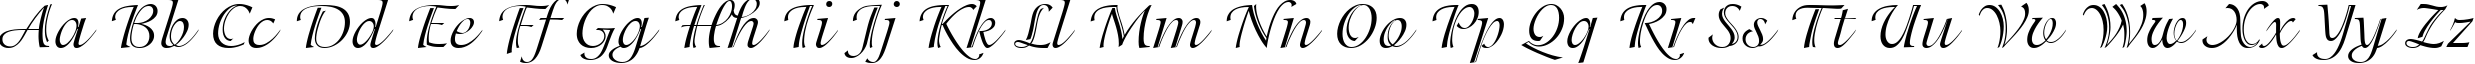 Пример написания английского алфавита шрифтом Isadora Cyr